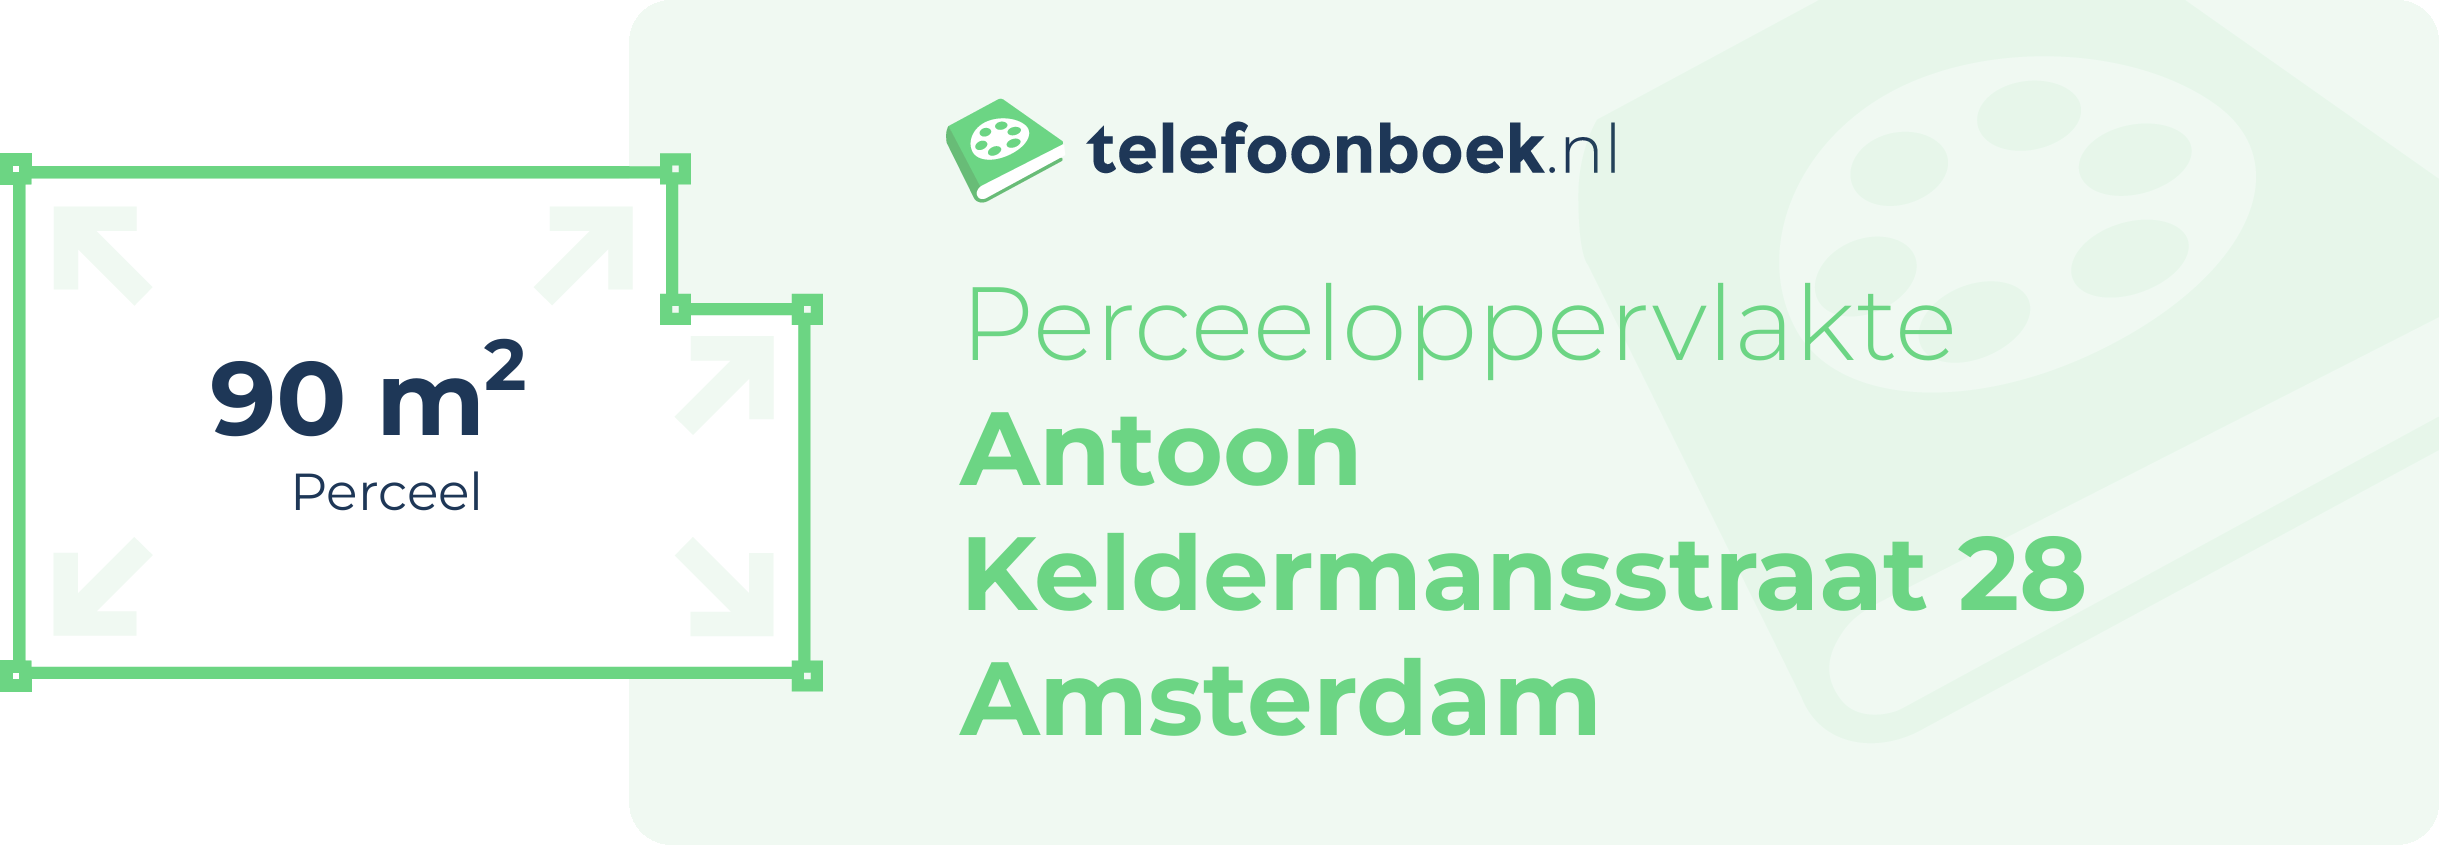 Perceeloppervlakte Antoon Keldermansstraat 28 Amsterdam